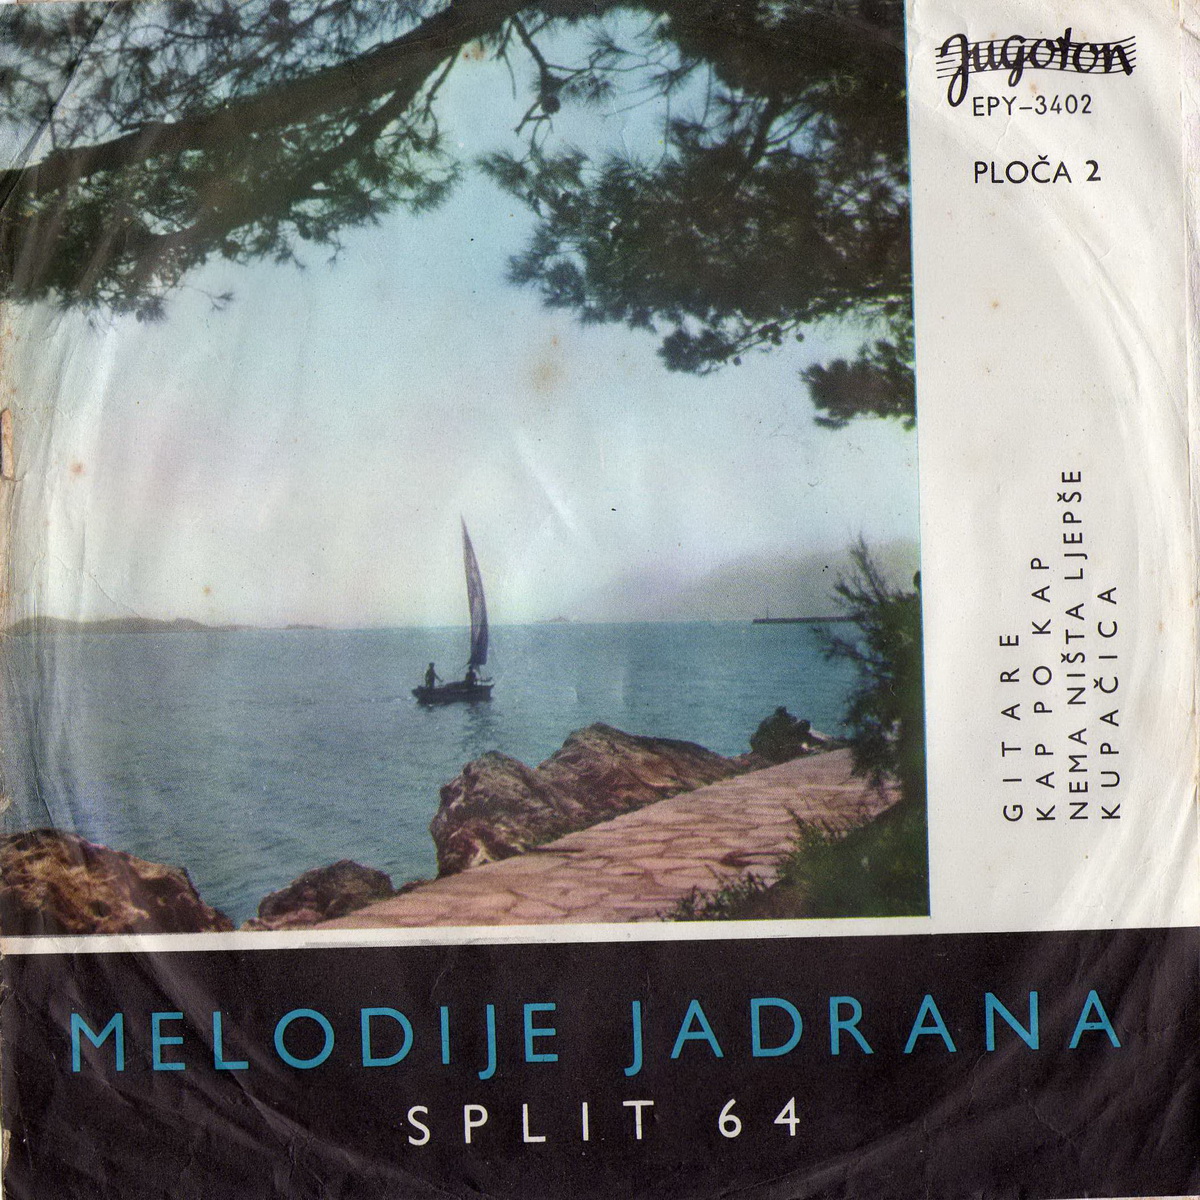 VA 1964 Split 64 Melodije Jadrana EP 2 a